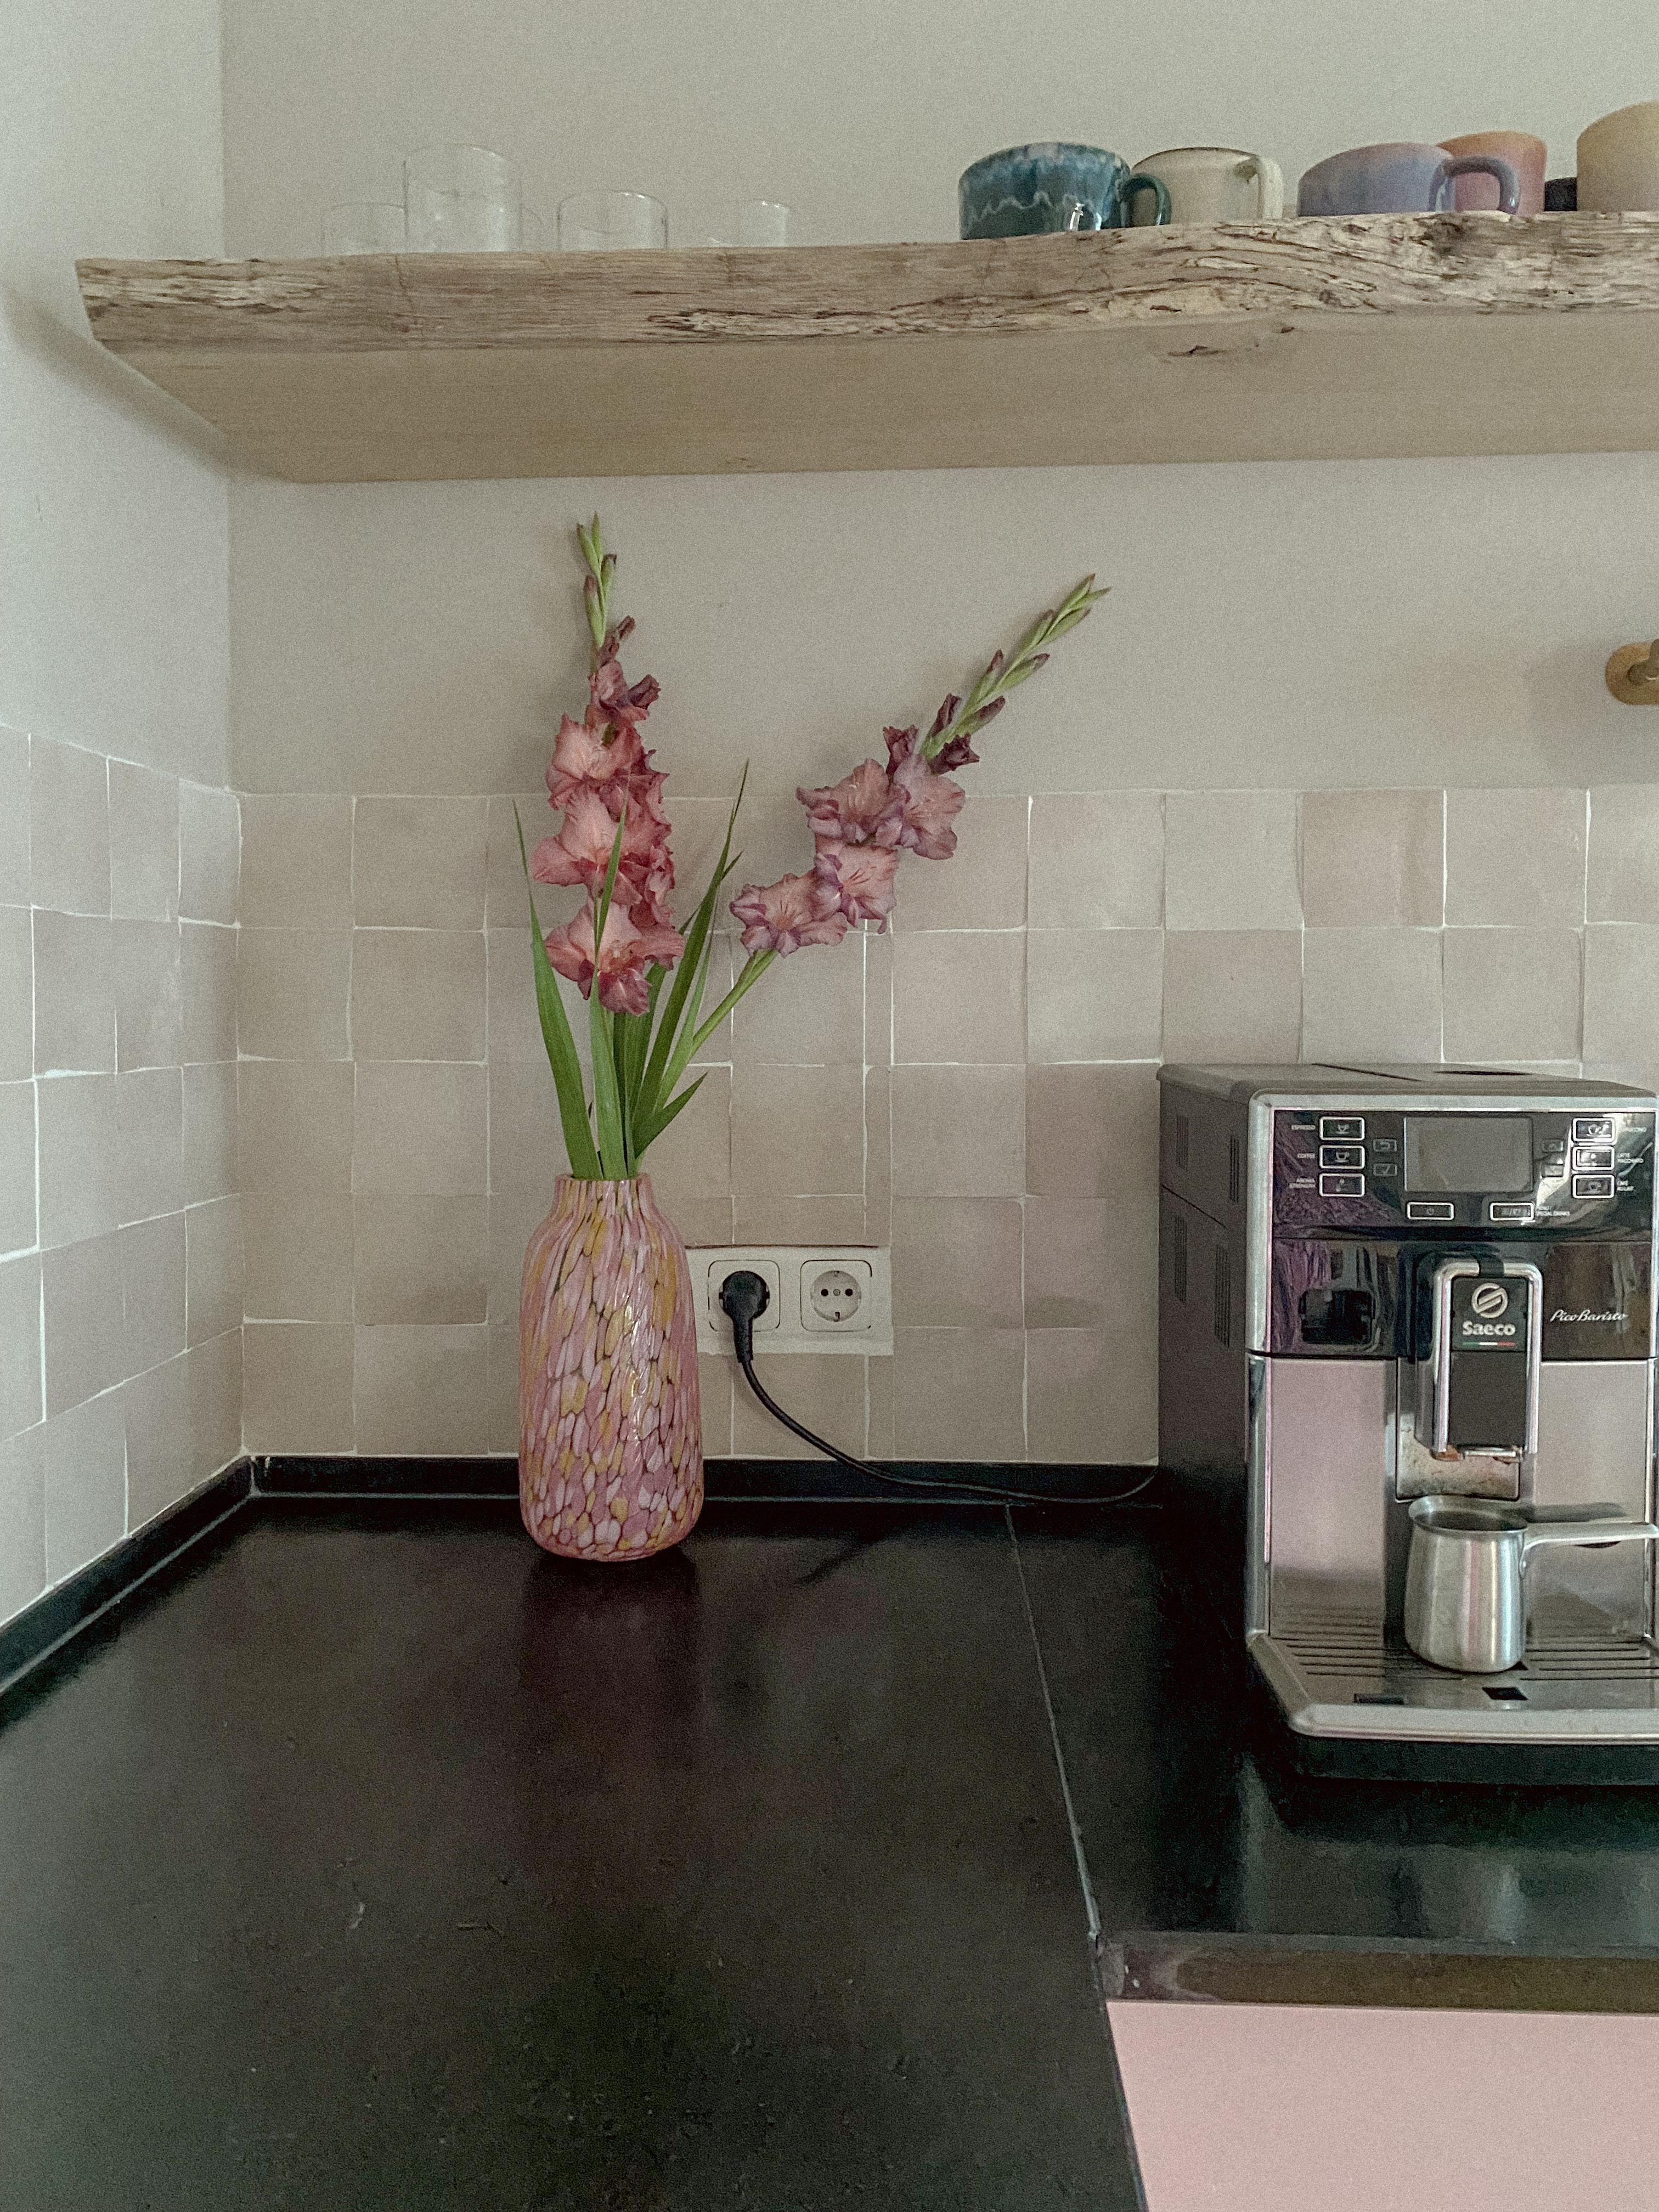 #Gladiolen frisch aus dem Garten. #freshflowers #küche #couchstyle